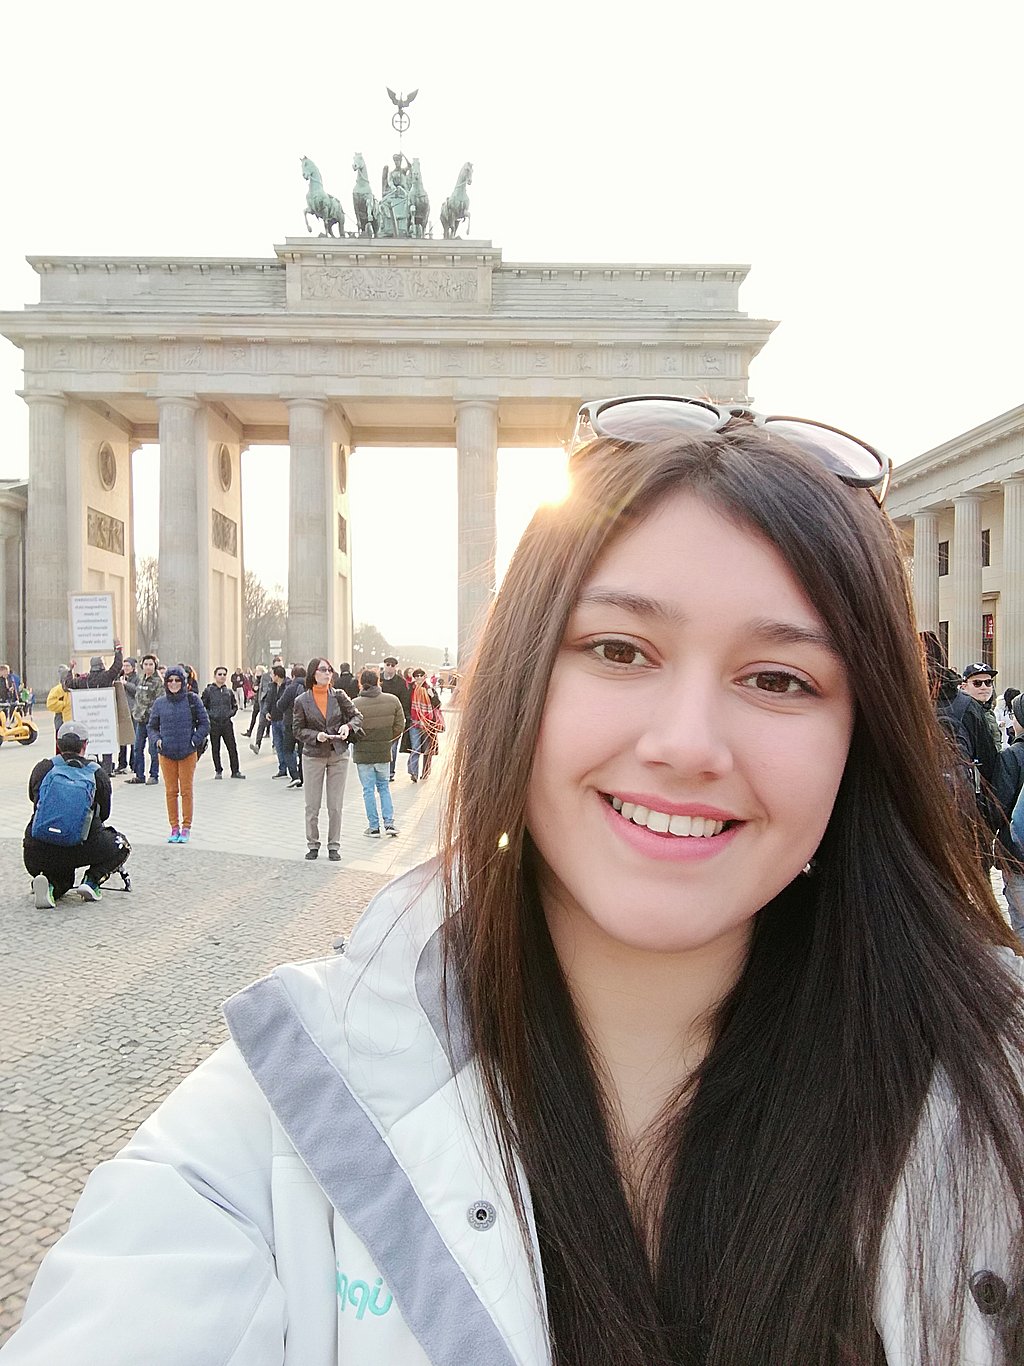 Glücklich, in Berlin zu sein: Die chilenische Studentin Paula macht ein Selfie vor dem Brandenburger Tor. Foto: Paula San Martín Maldonado